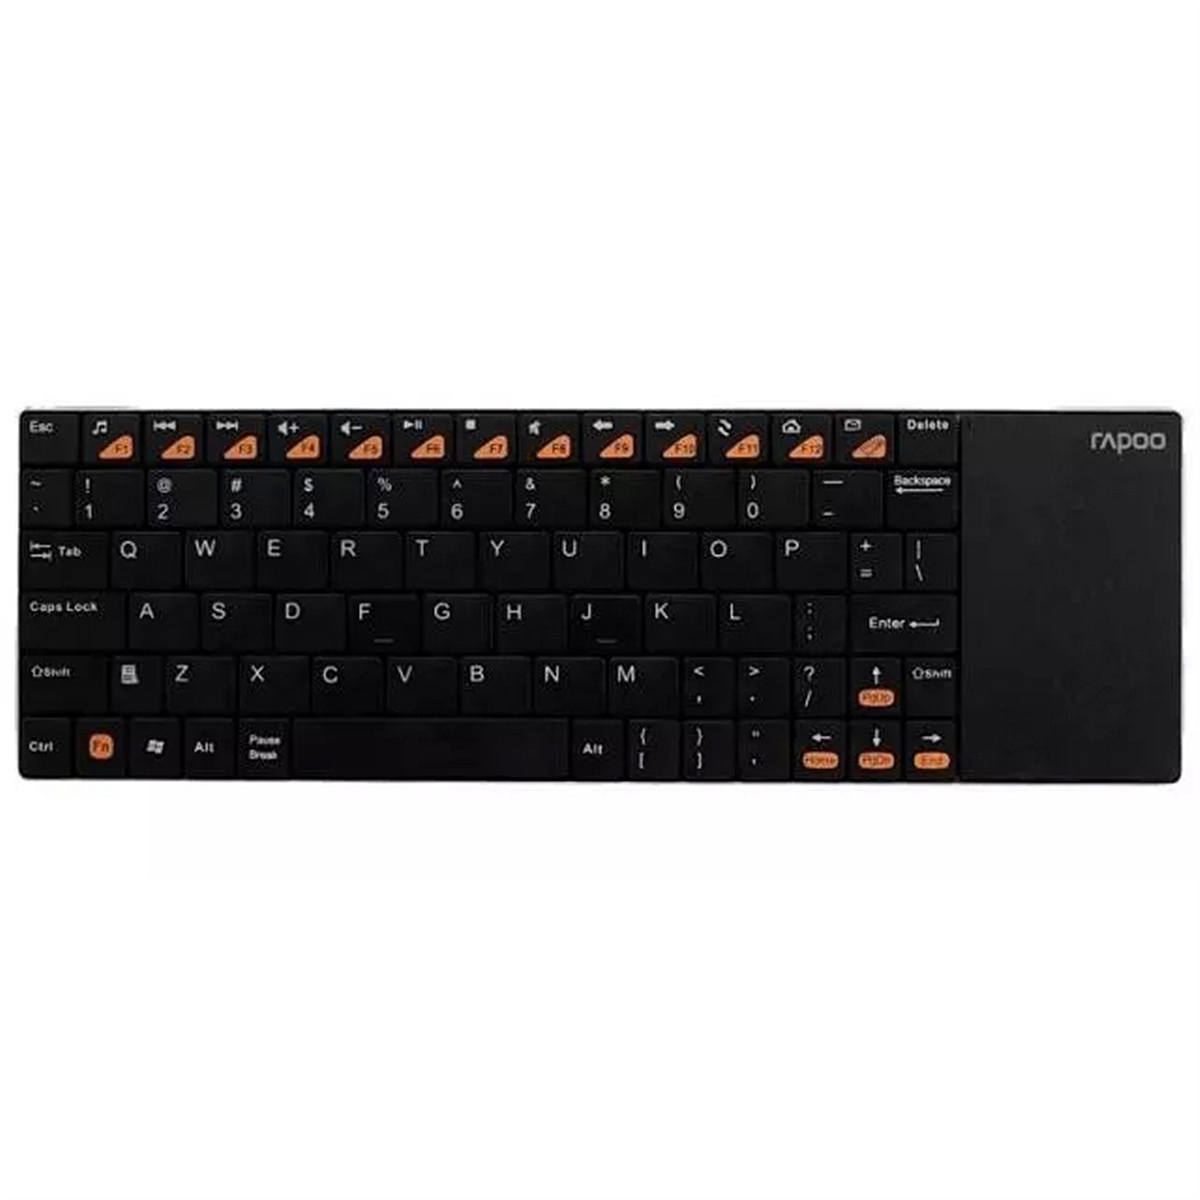 雷柏E2700无线多媒体触控键盘黑(个)